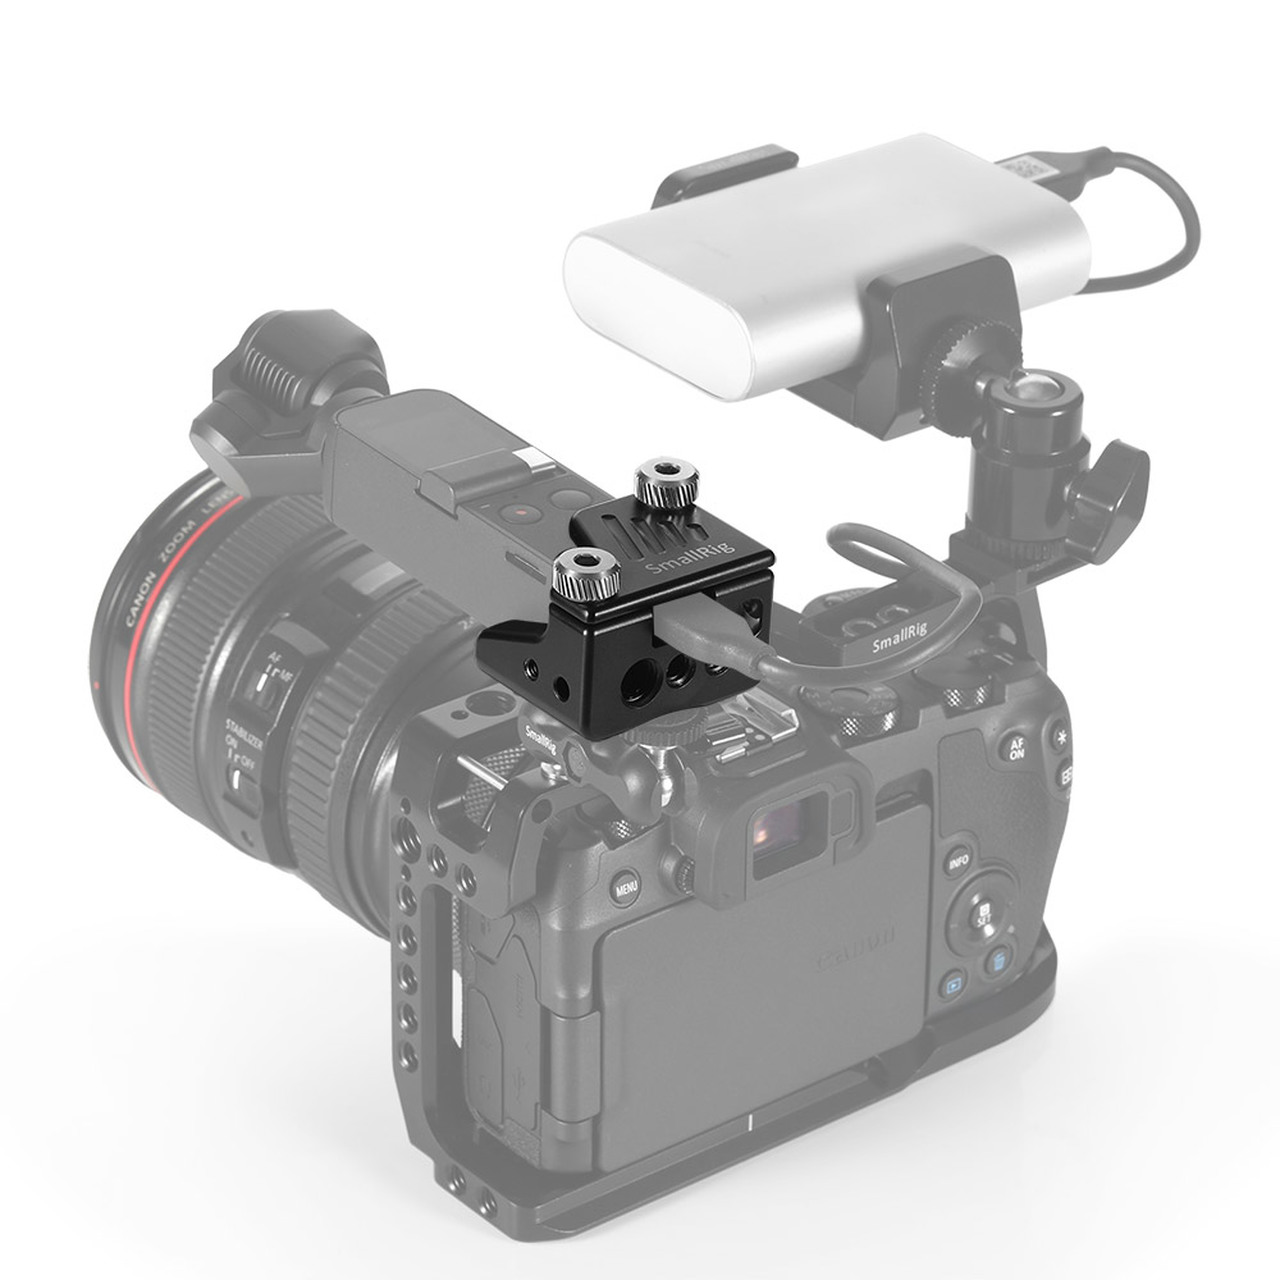 изображение применения клетки для OSMO Pocket SmallRig CSD2321 с камерой